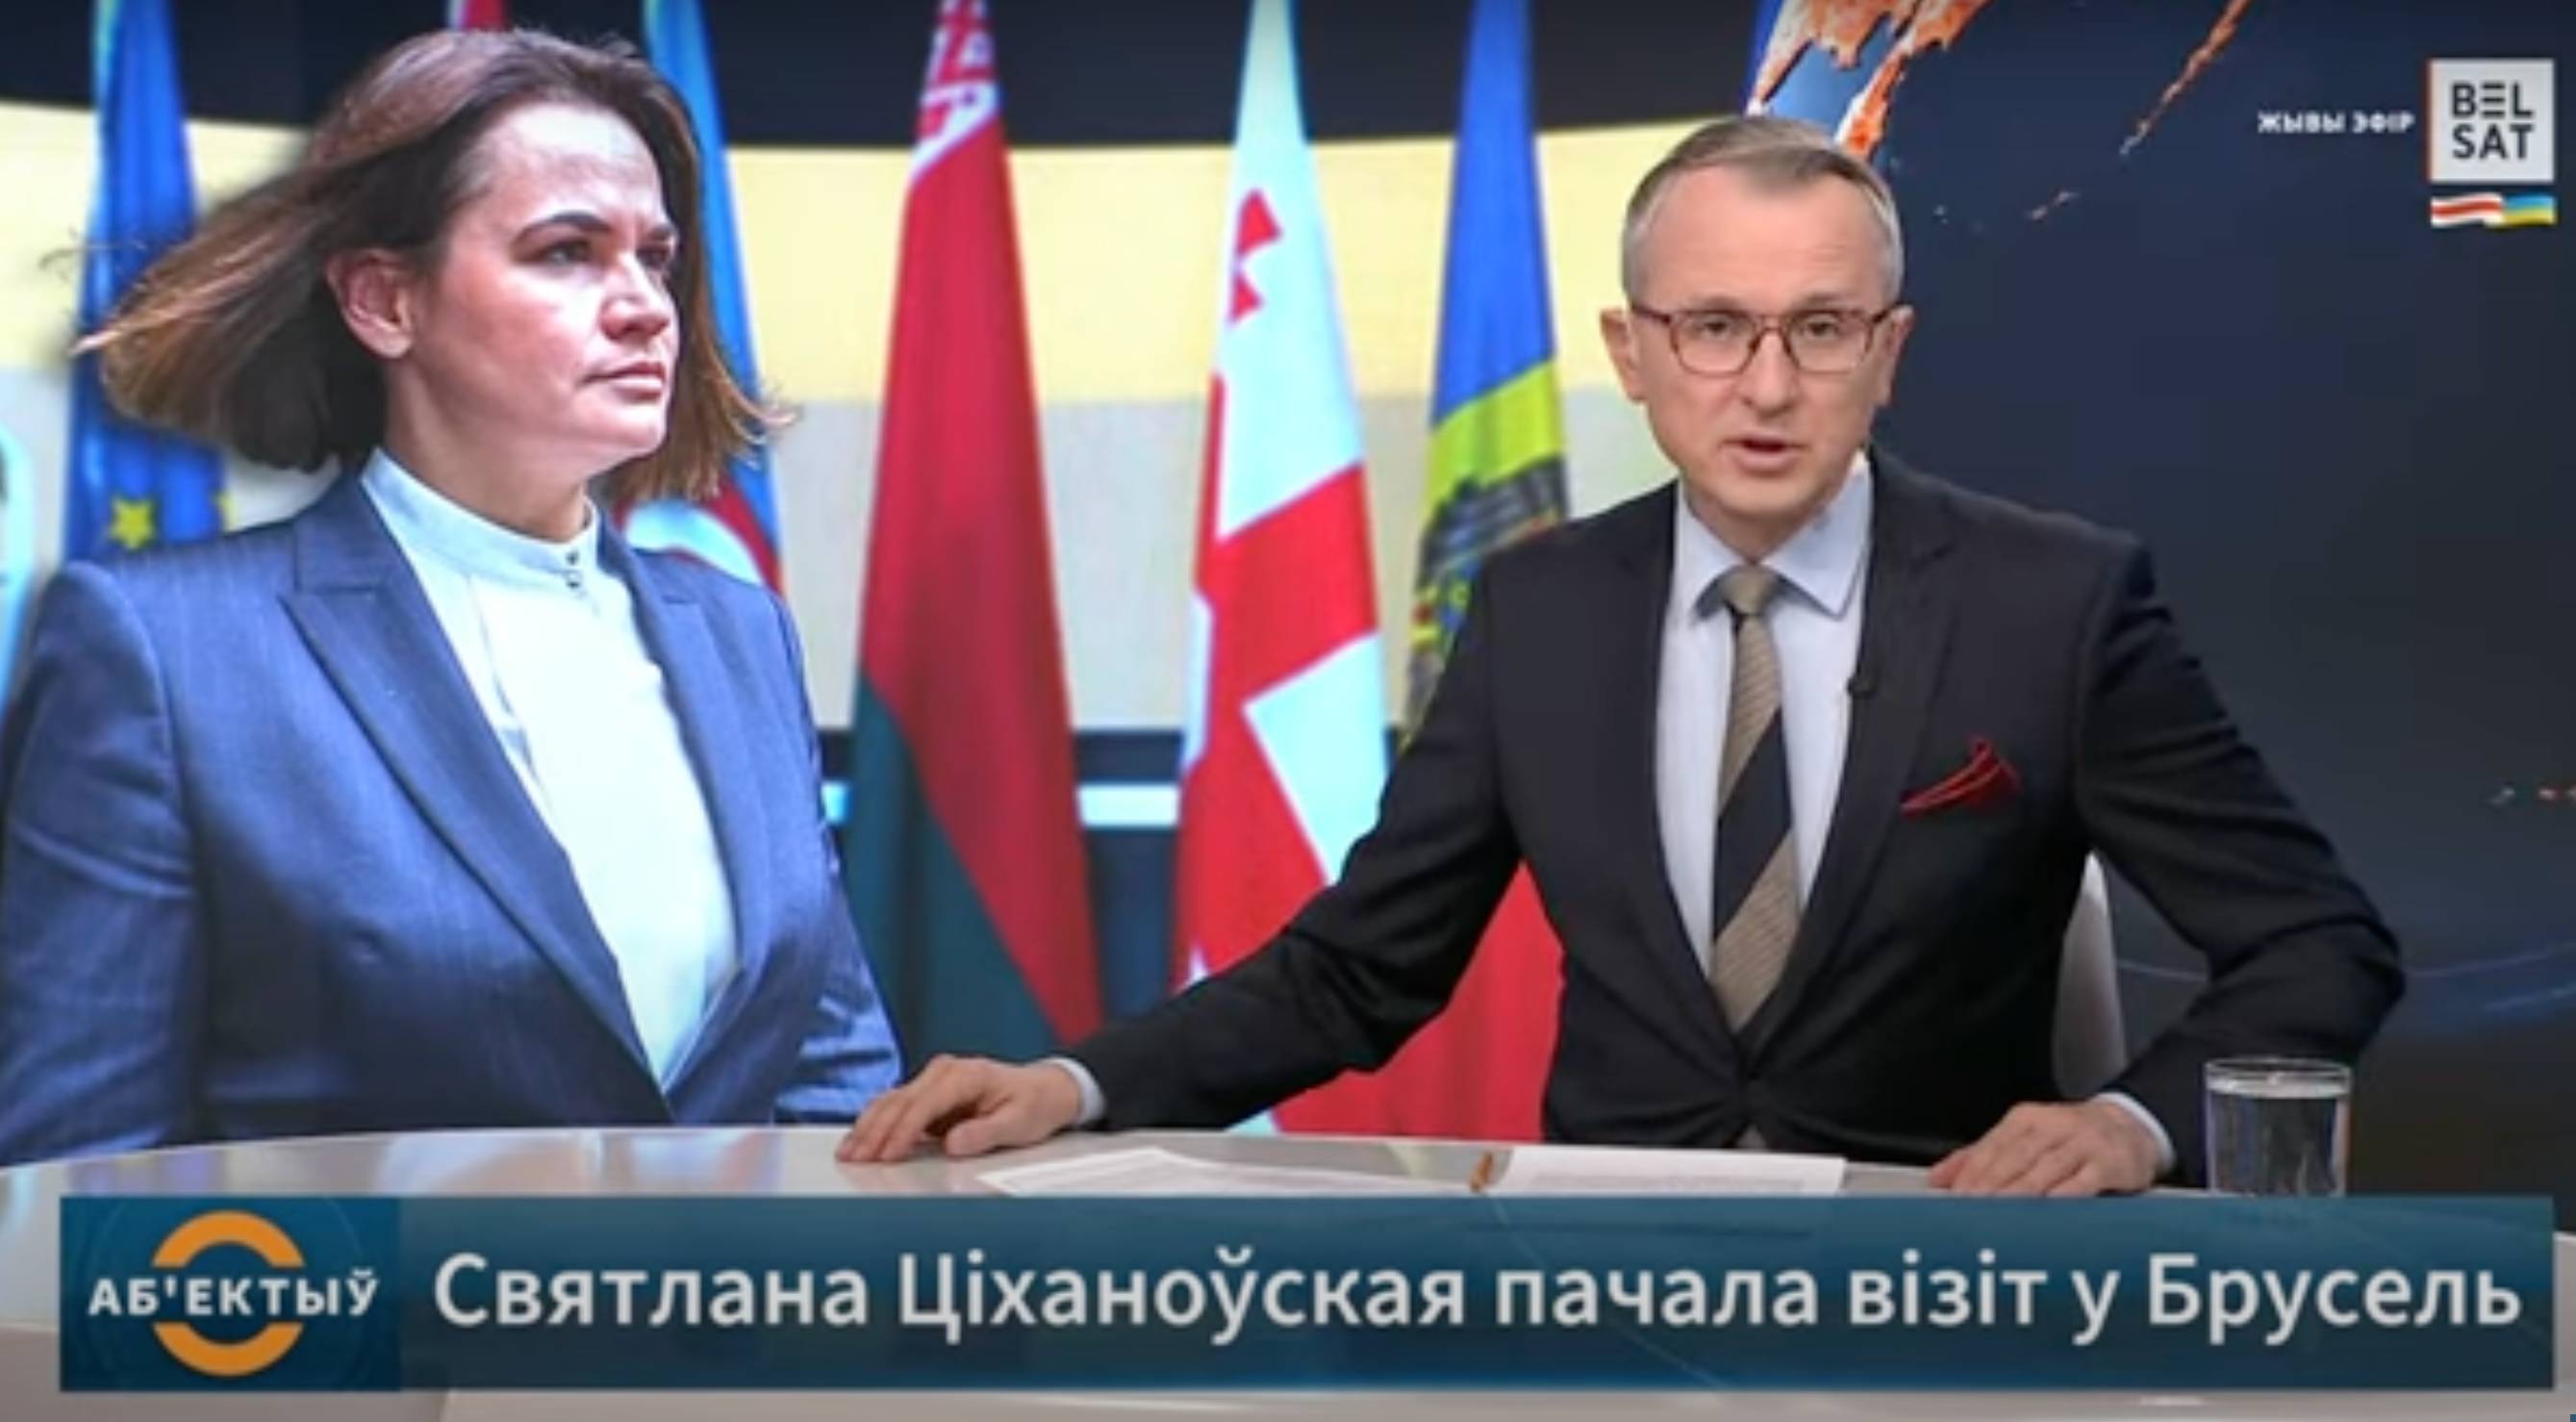 Studio telewizji Biełsat, prowadzący program dziennikarz czyta informacje, w tle zdjęcie Swietlany Cichanouskiej. Biełsat